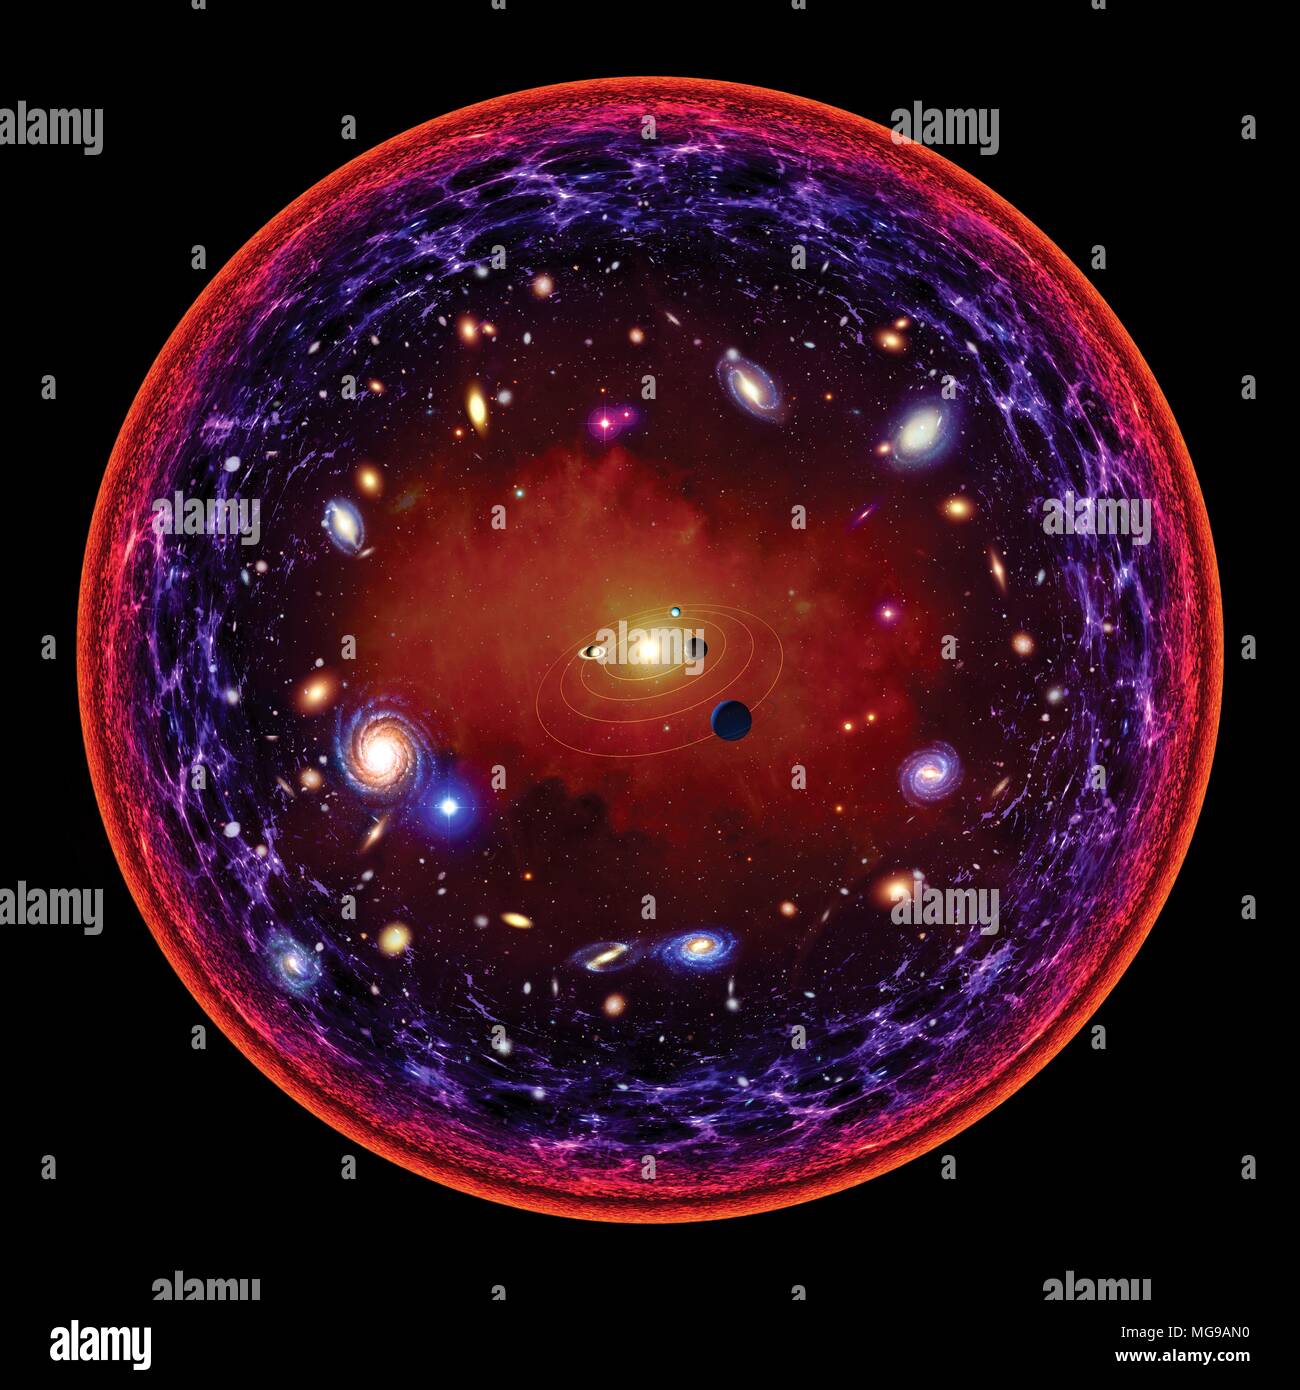 Une illustration conceptuelle de l'univers visible. Au centre est le système solaire. Alors que nous allons plus loin, nous rencontrons des premières étoiles, galaxies. Le plus loin dans l'espace nous attendons, plus en arrière dans le temps nous voir, à cause de la vitesse finie de la lumière. Le plus loin que nous pouvons voir est le point auquel l'Univers devient transparent - lorsque la densité de matière autorisée à photons voyager dans l'univers sans absorption. Ceci est représenté au bord du cercle. Banque D'Images